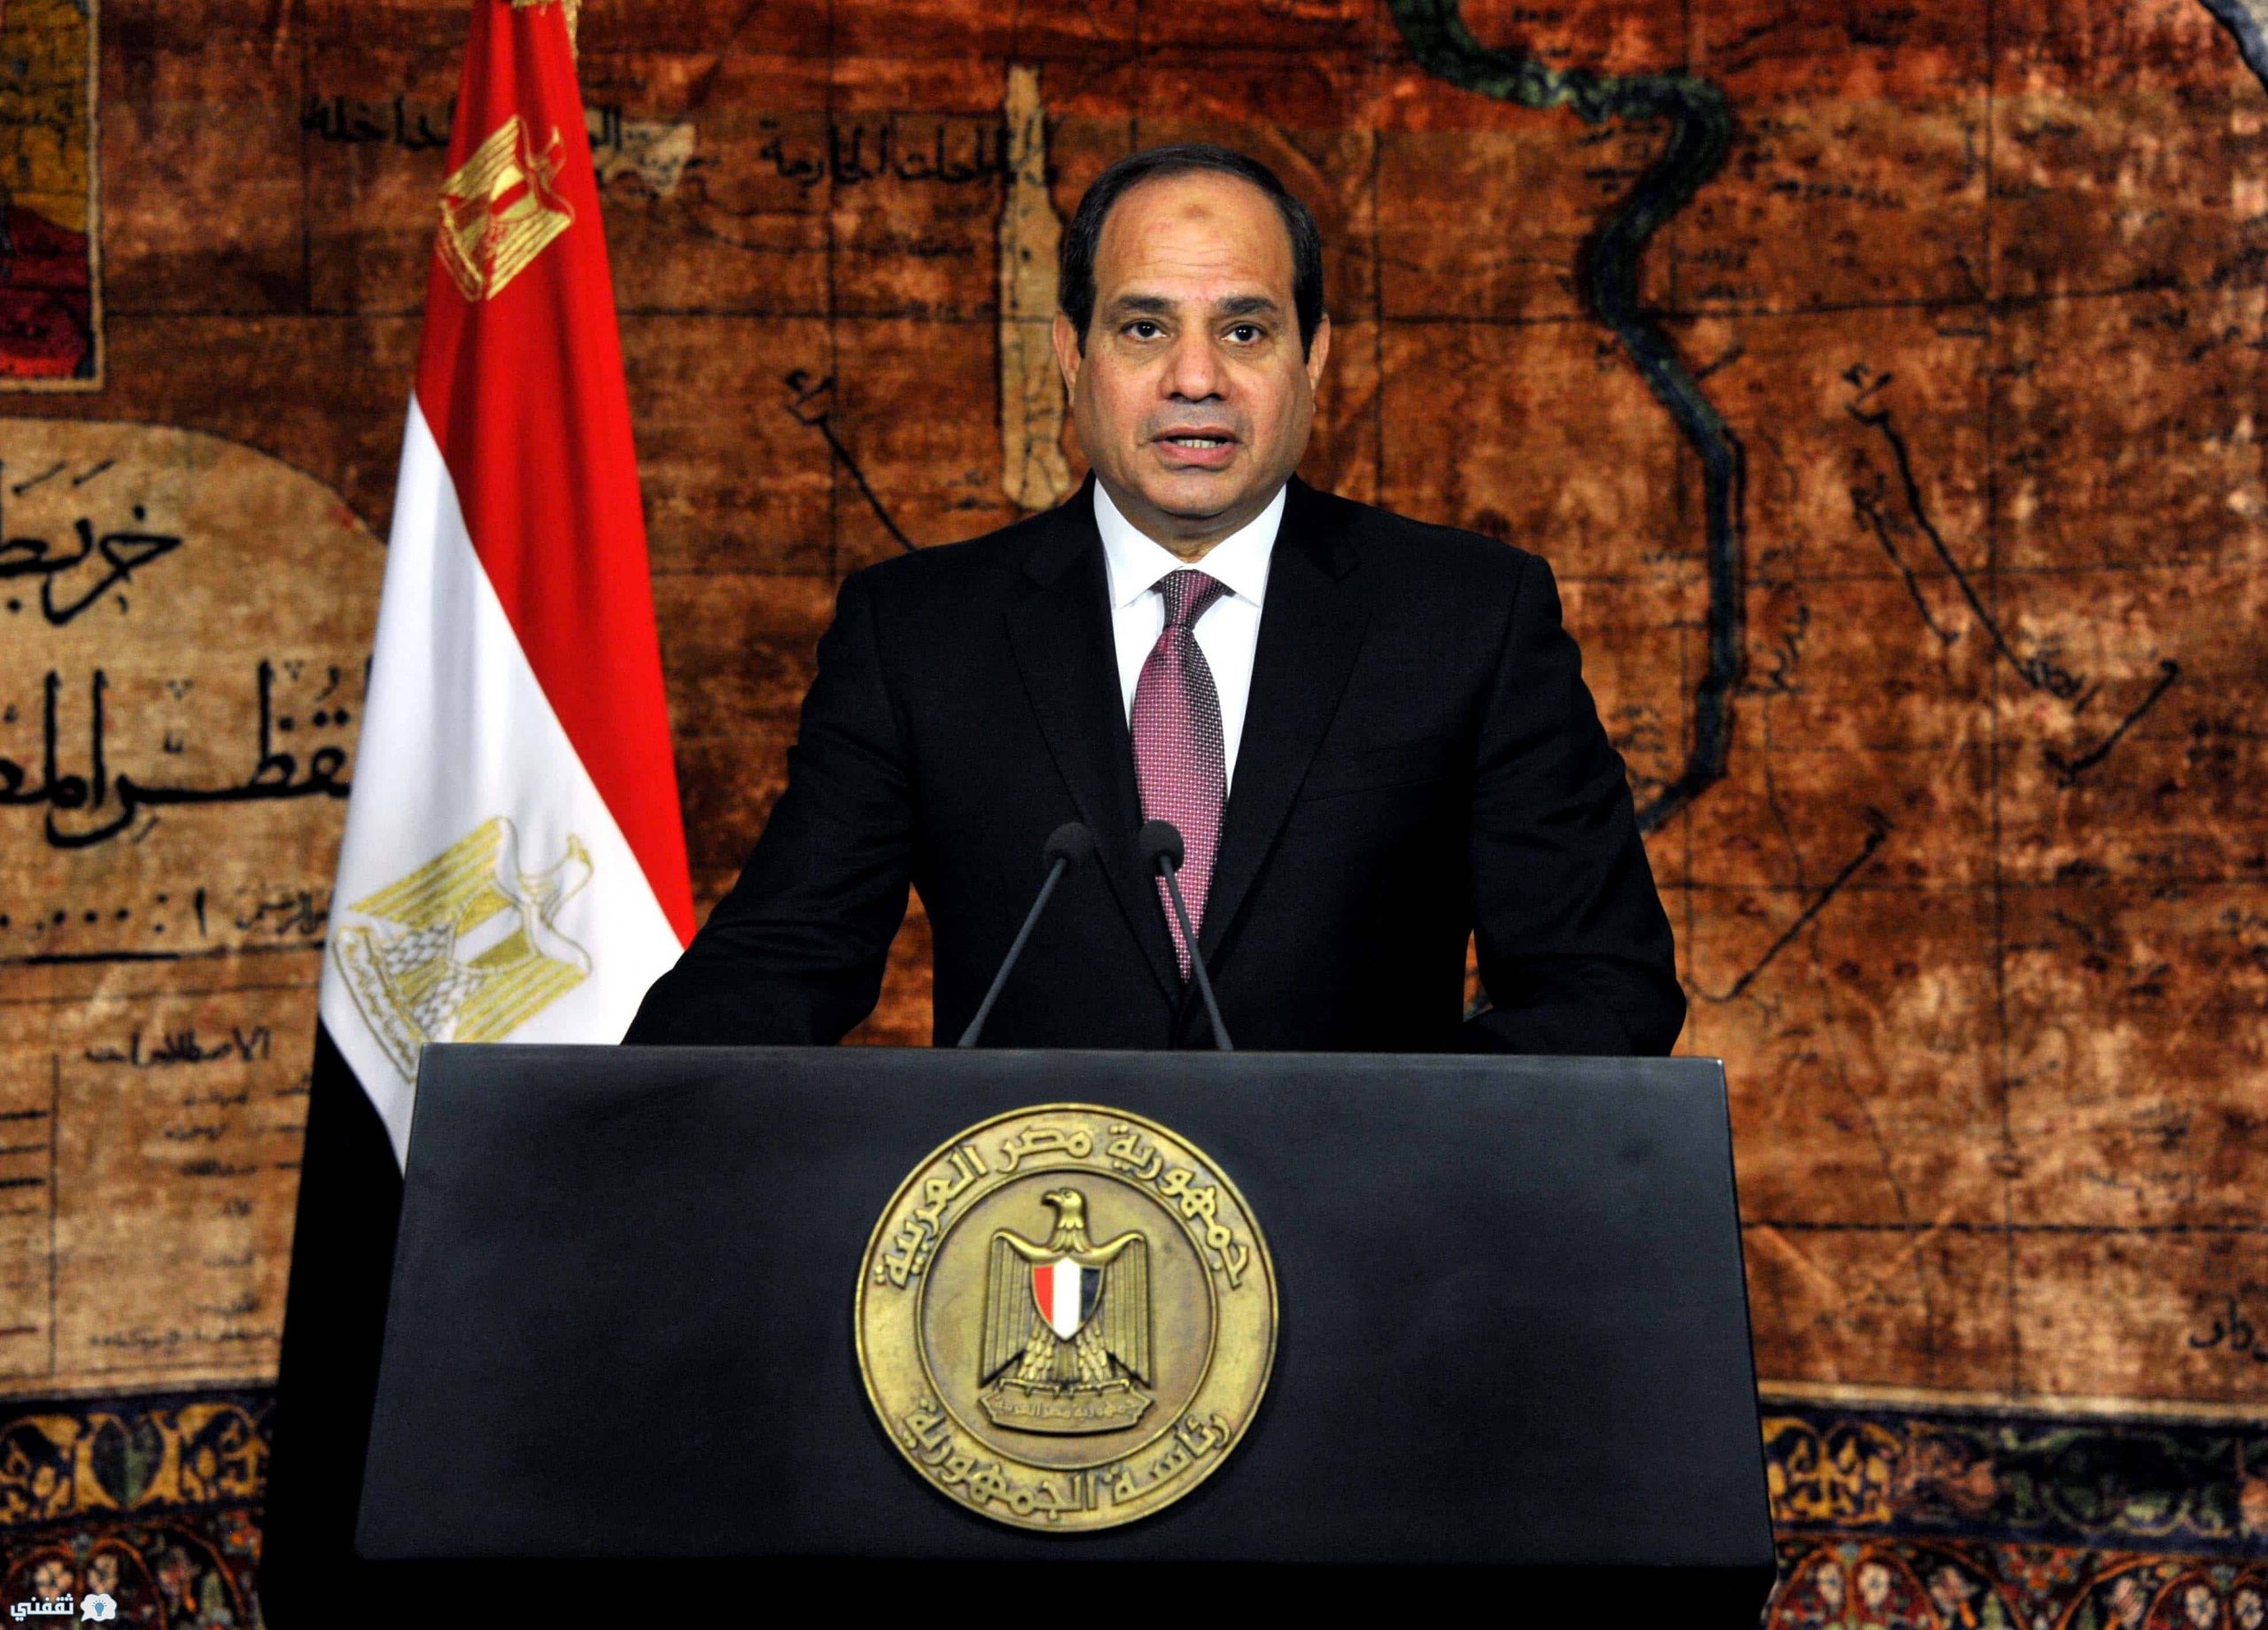 الرئيس السيسي أتابع بفخر بطولات القوات المسلحة والشرطة لتطهير سيناء